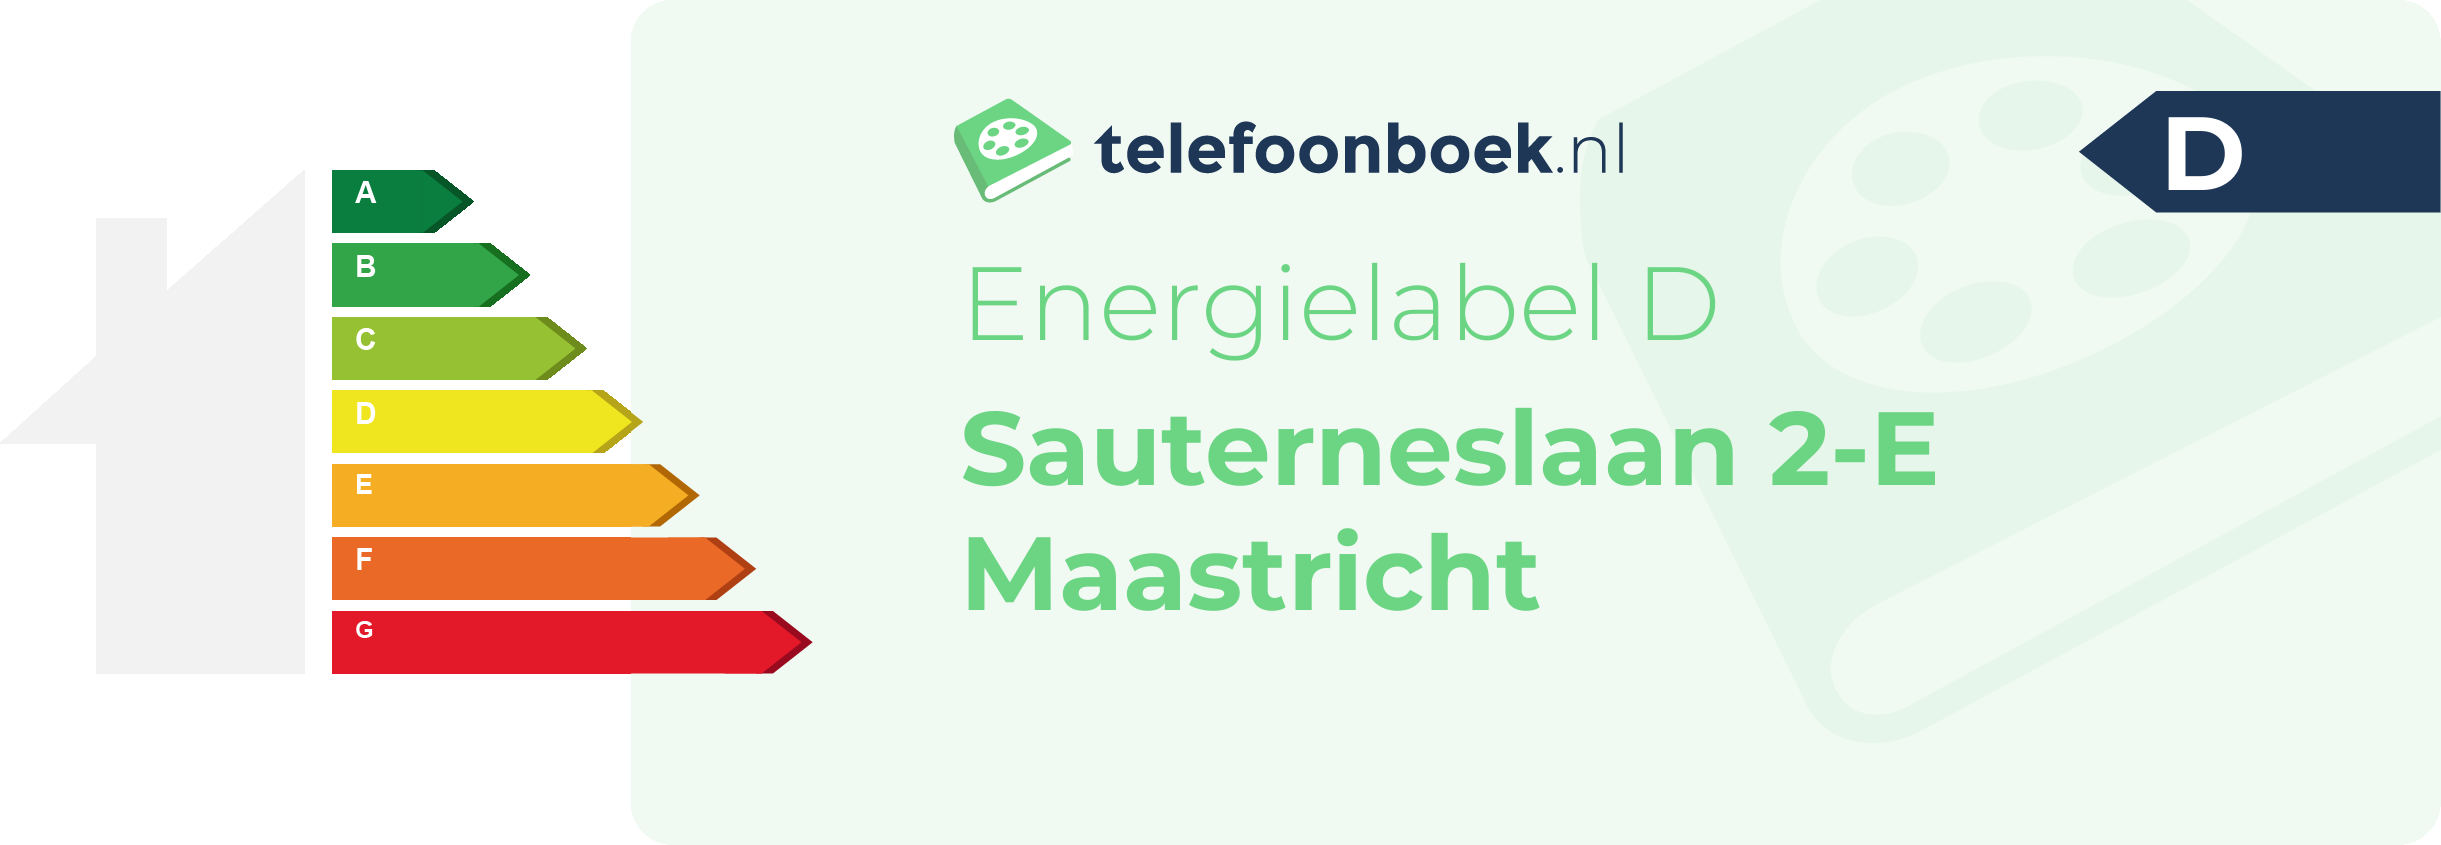 Energielabel Sauterneslaan 2-E Maastricht